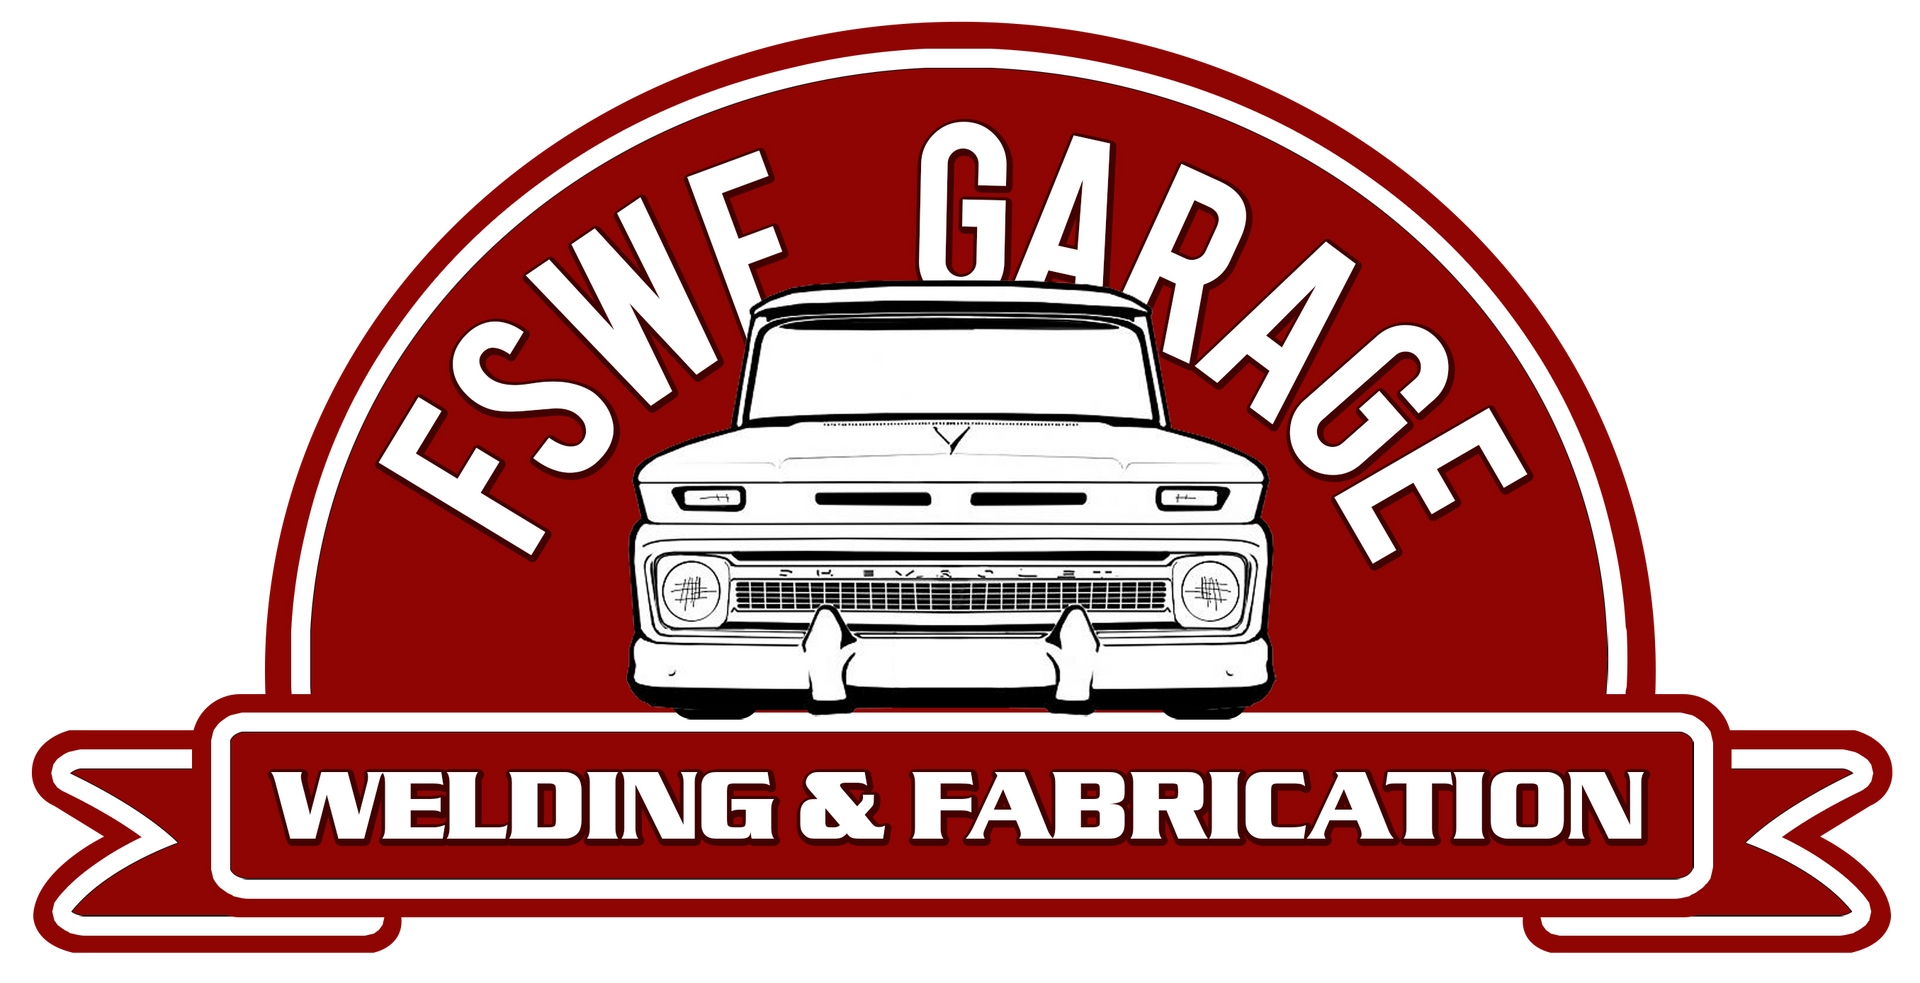 FSWF Garage and Welding Logo